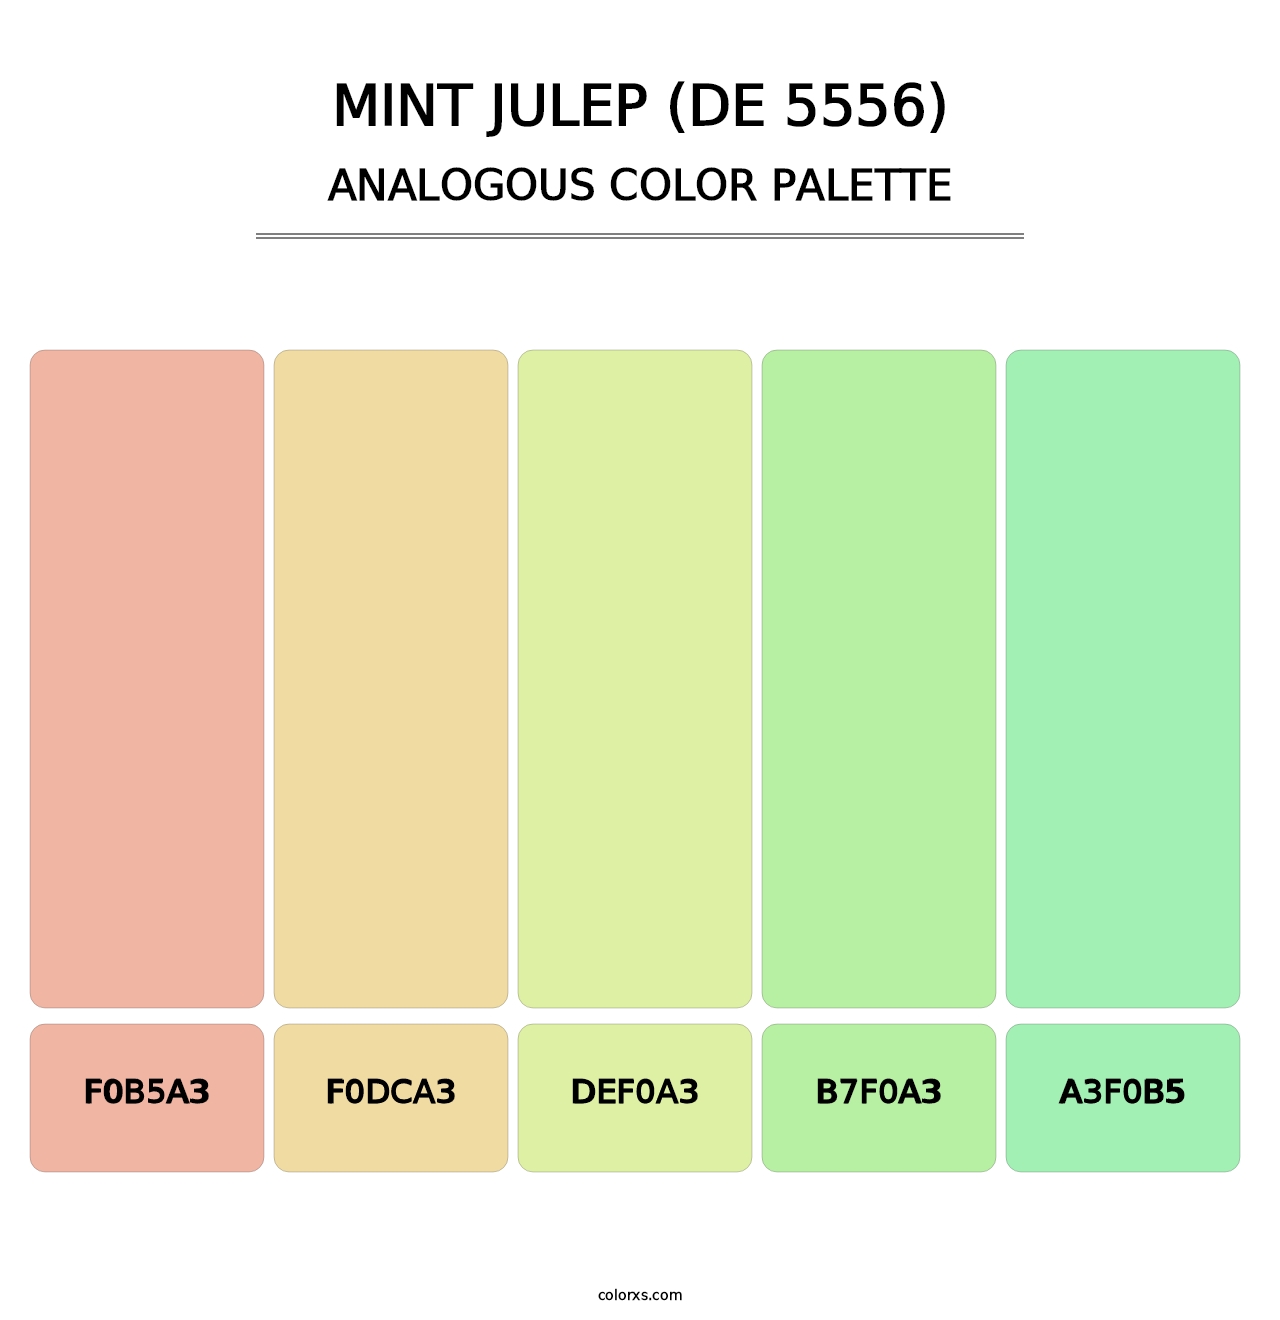 Mint Julep (DE 5556) - Analogous Color Palette